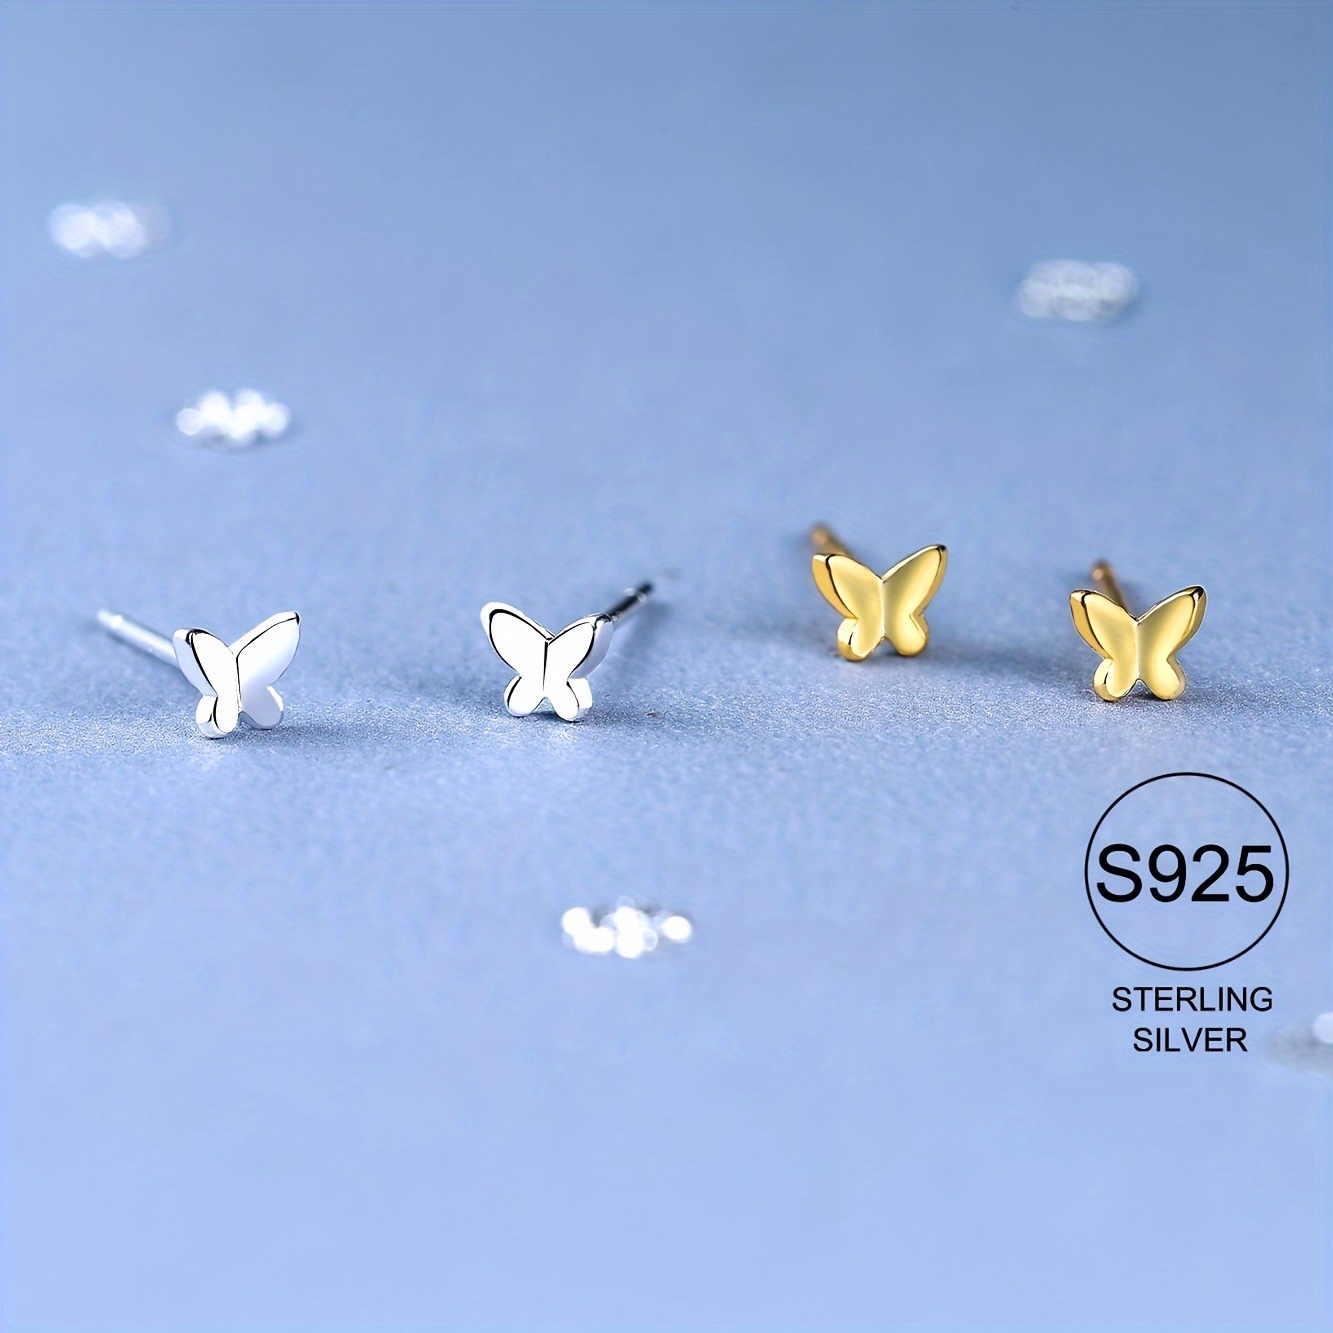 

S925 Sterling Silver Butterfly Stud Earrings Mini Cute Butterfly Stud Earrings For Daily Wearing Women's Ear Jewelry Accessories 0.35g